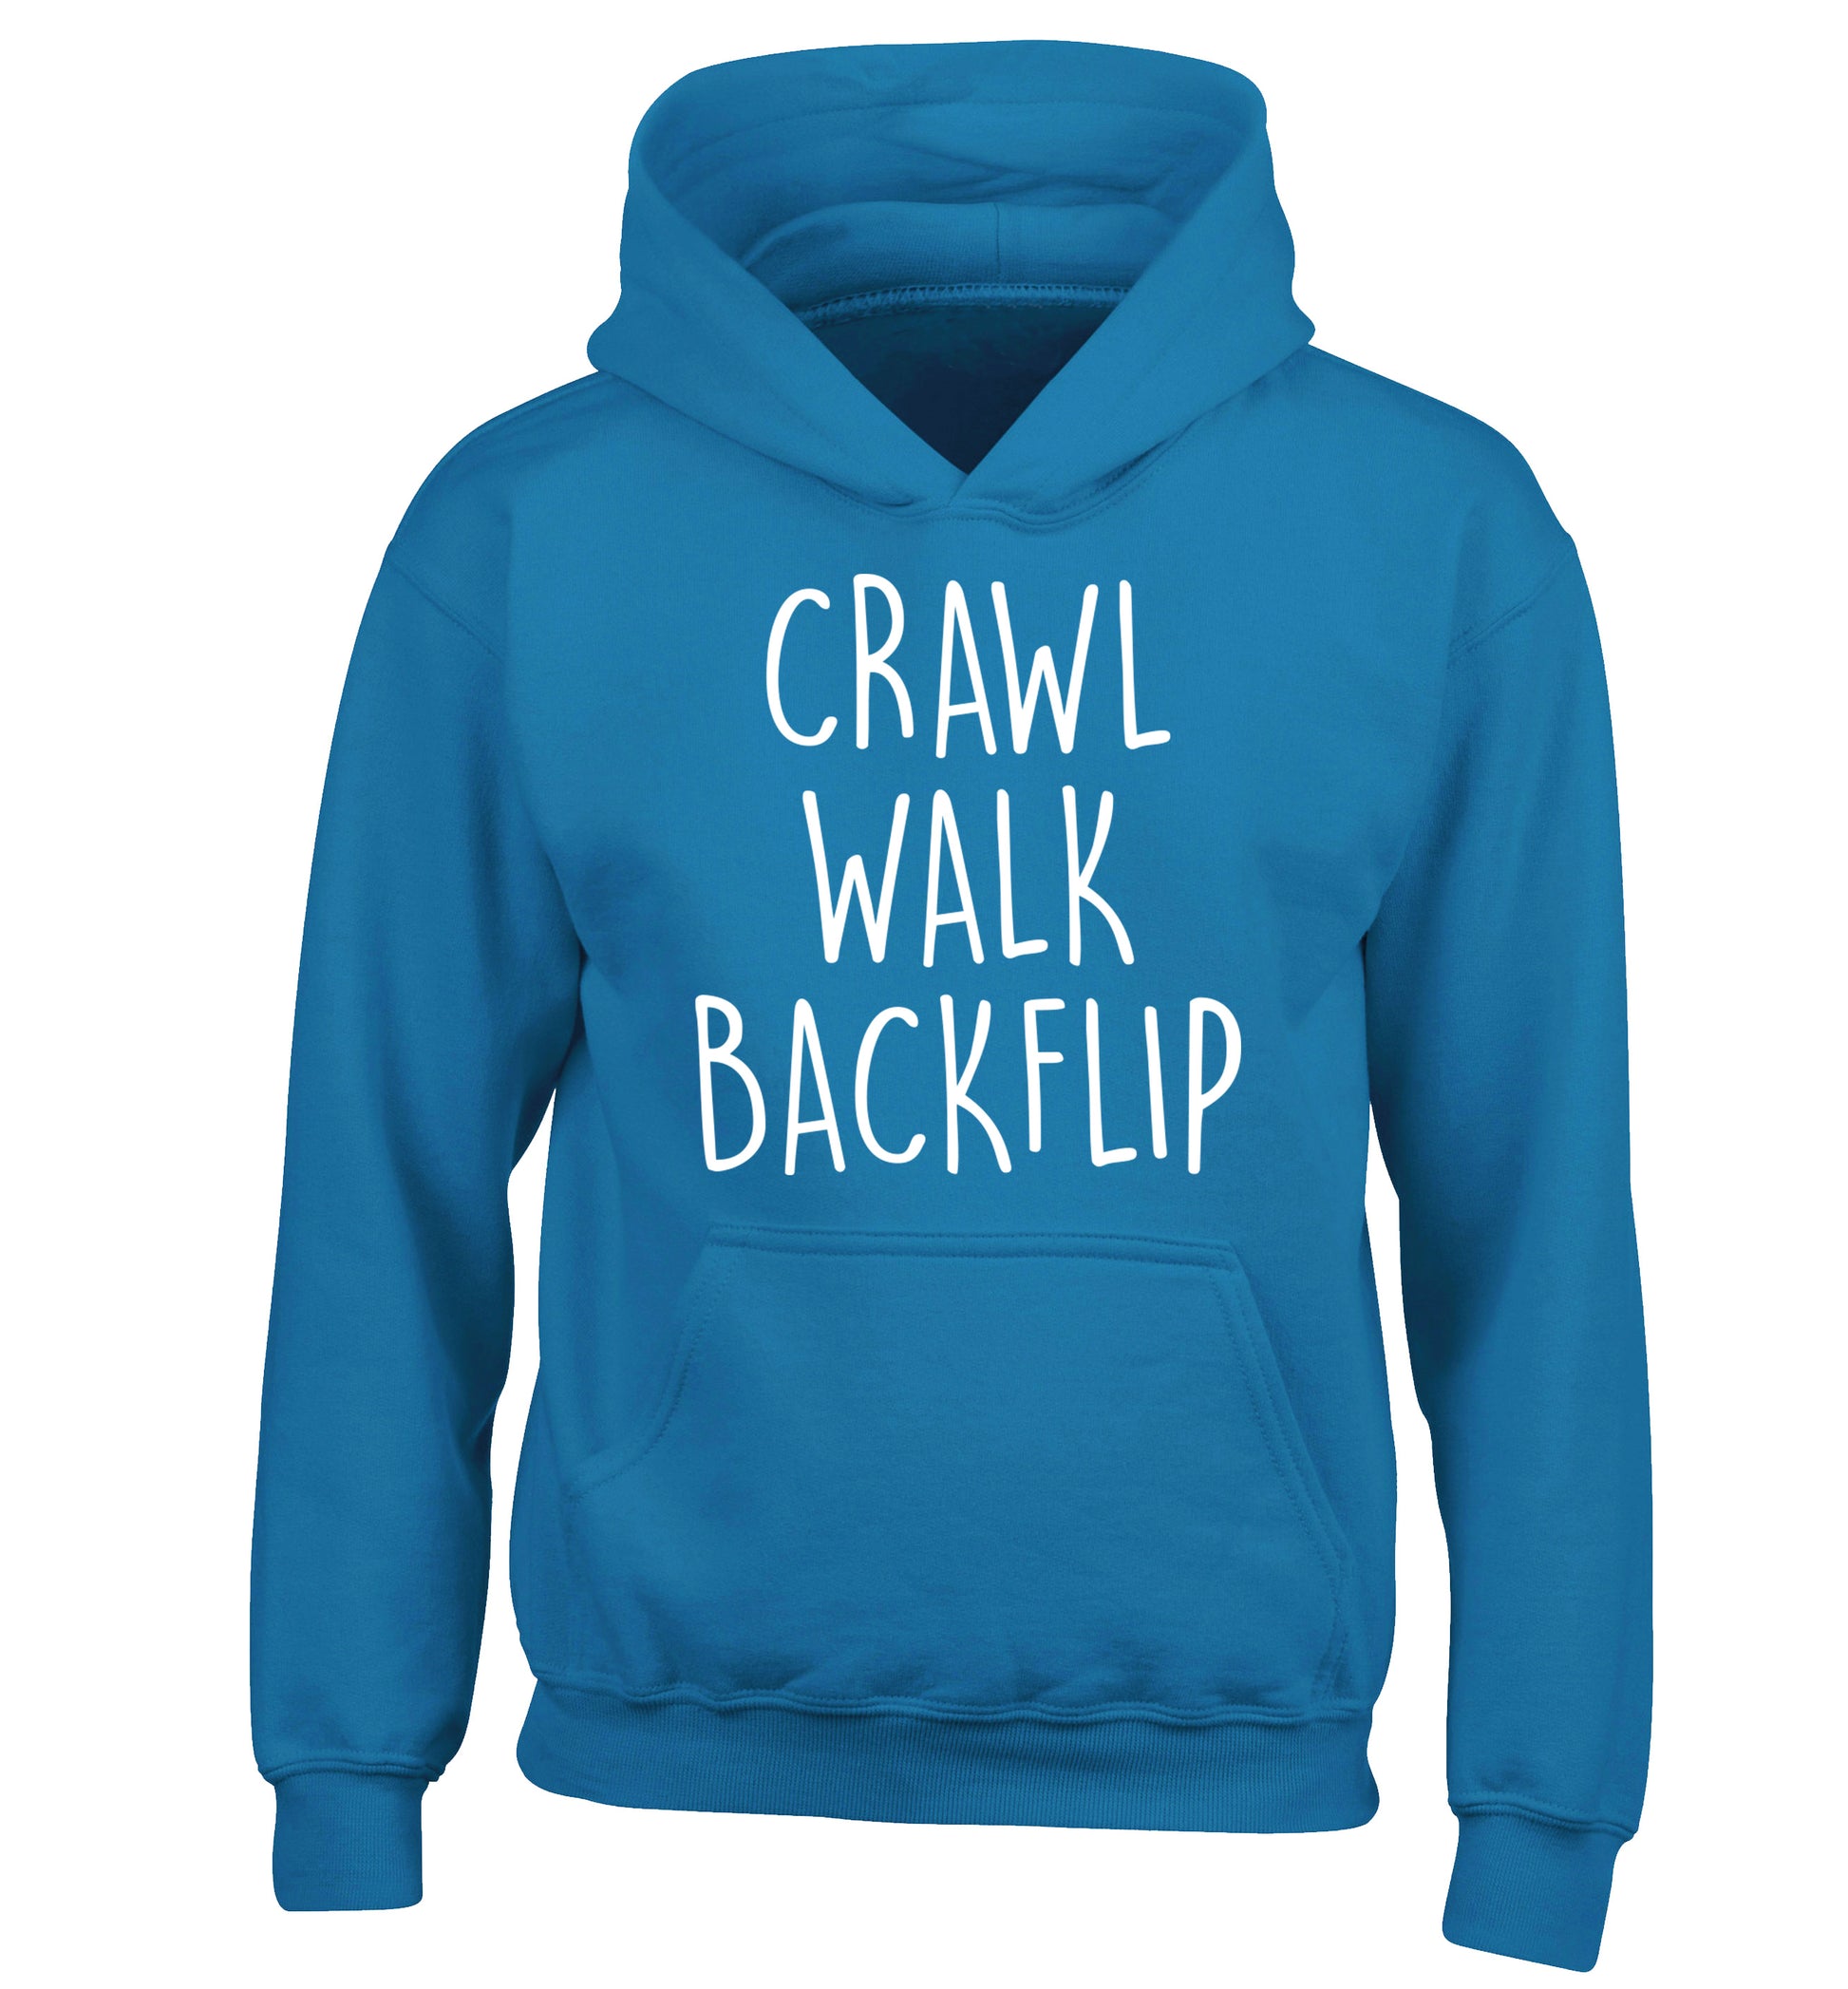 Crawl Walk Backflip children's blue hoodie 12-13 Years